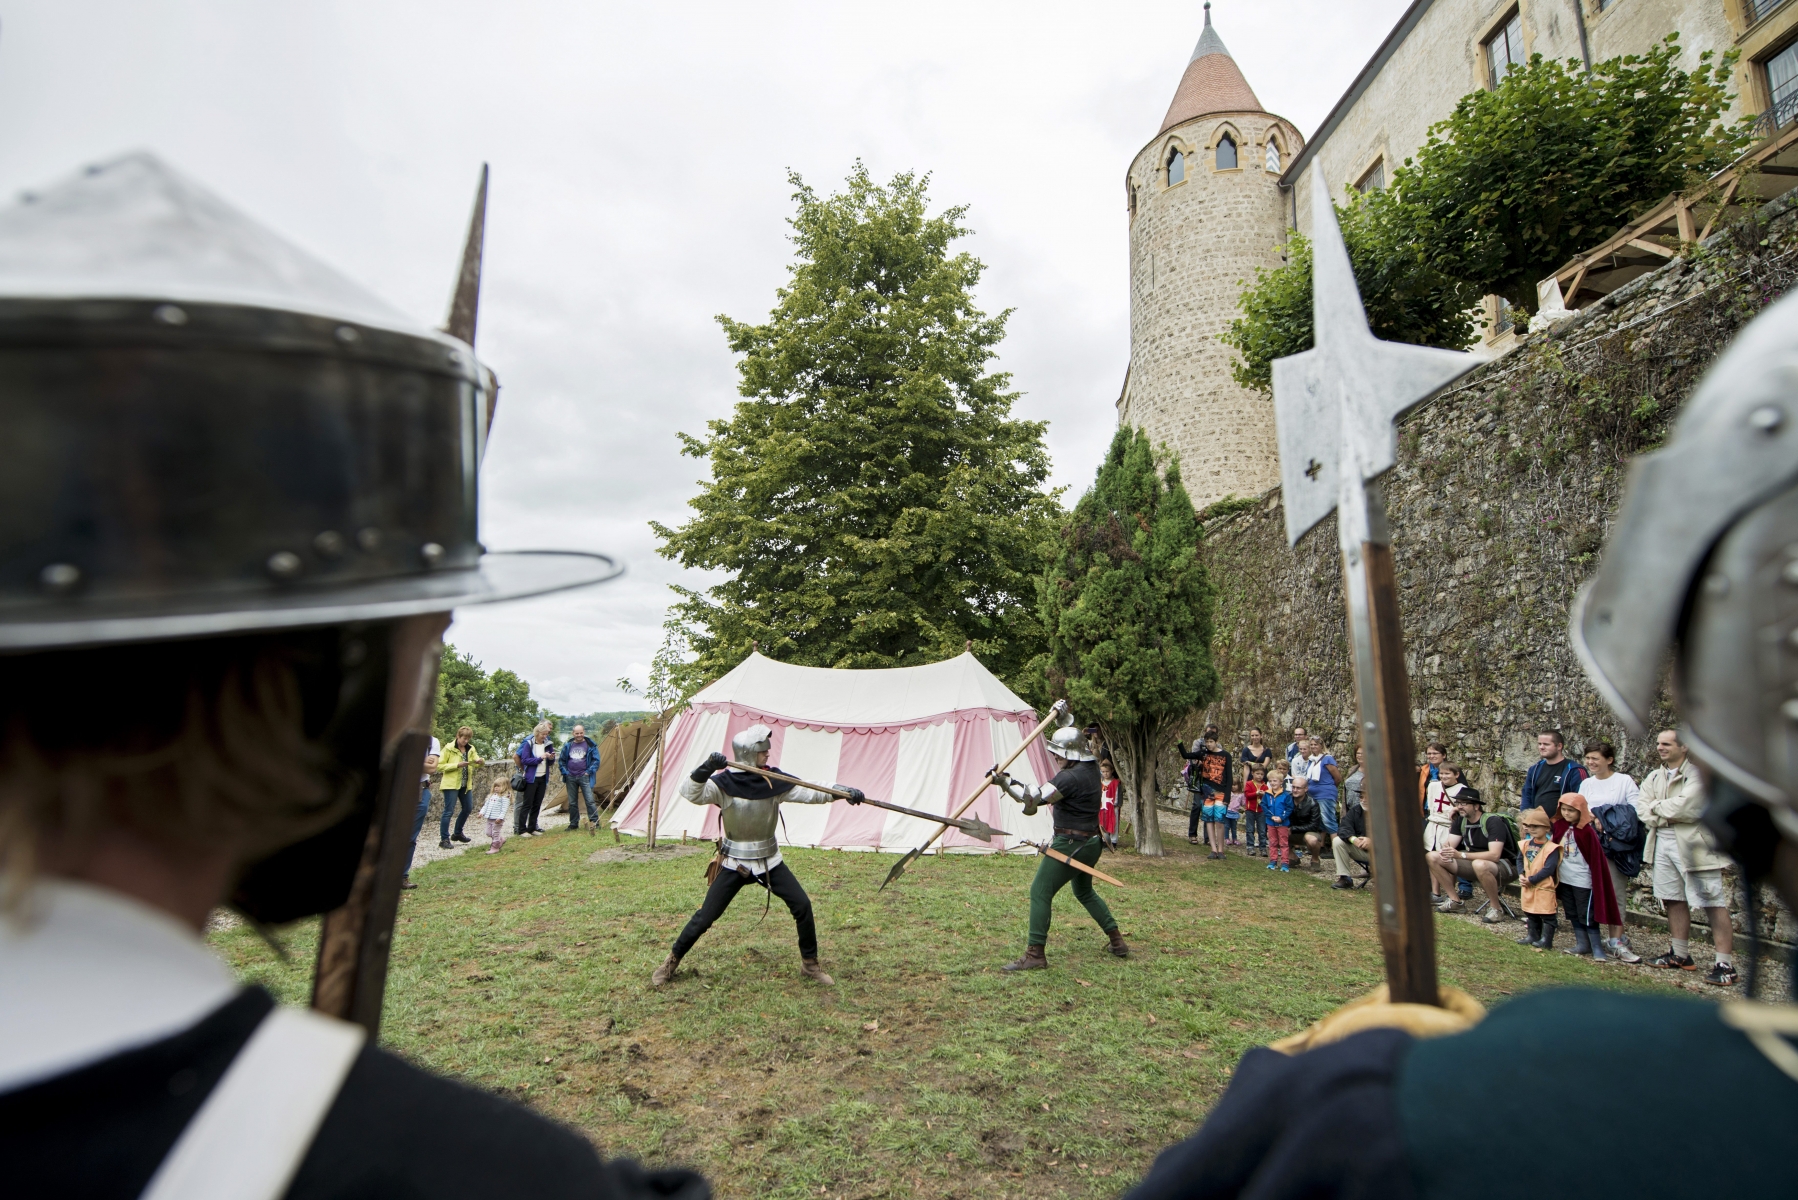 fete medievale au chateau

Grandson, 16 08 2015
Photo © David Marchon